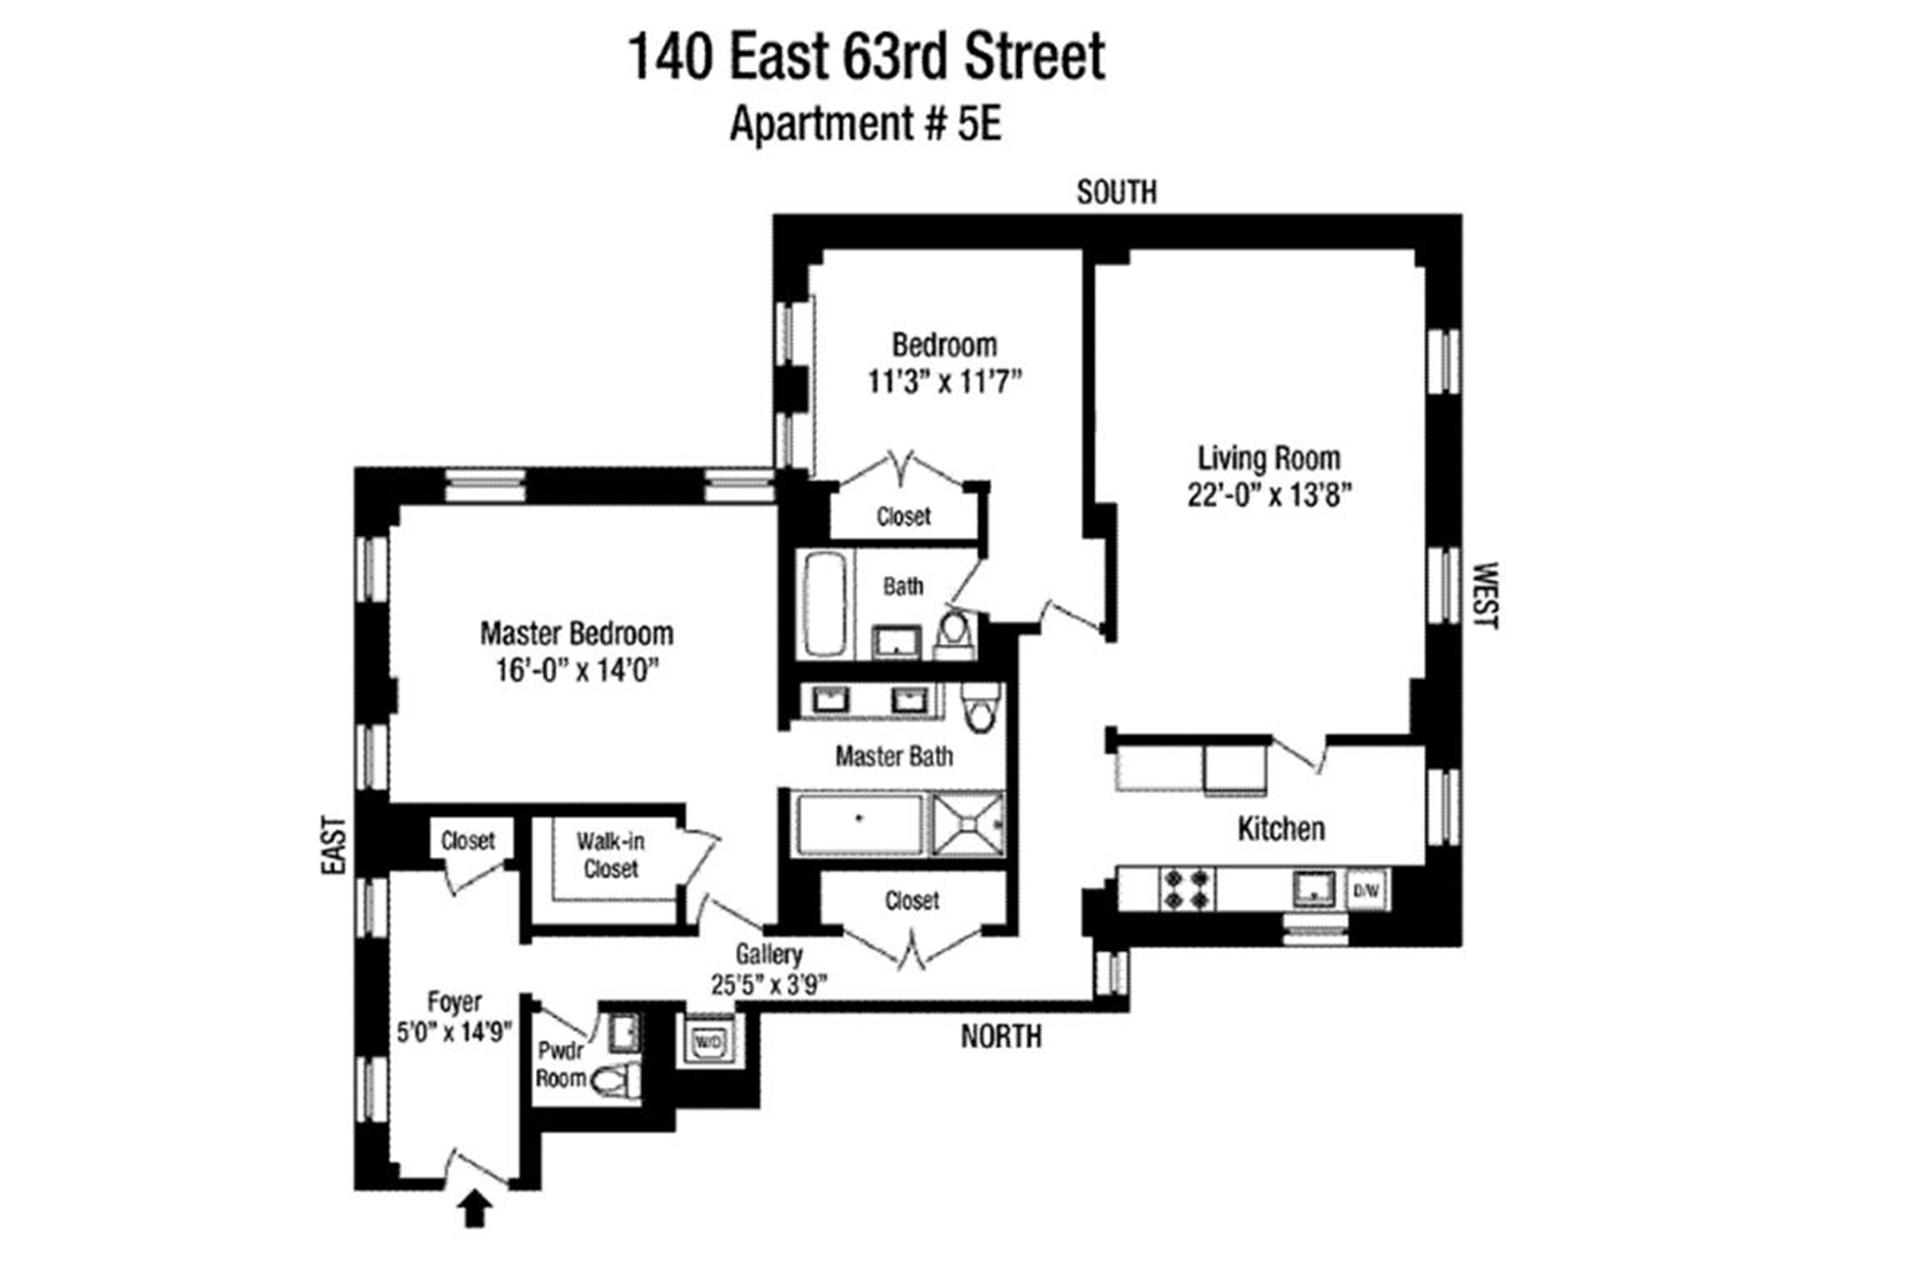 Floorplan for 140 East 63rd Street, 5E